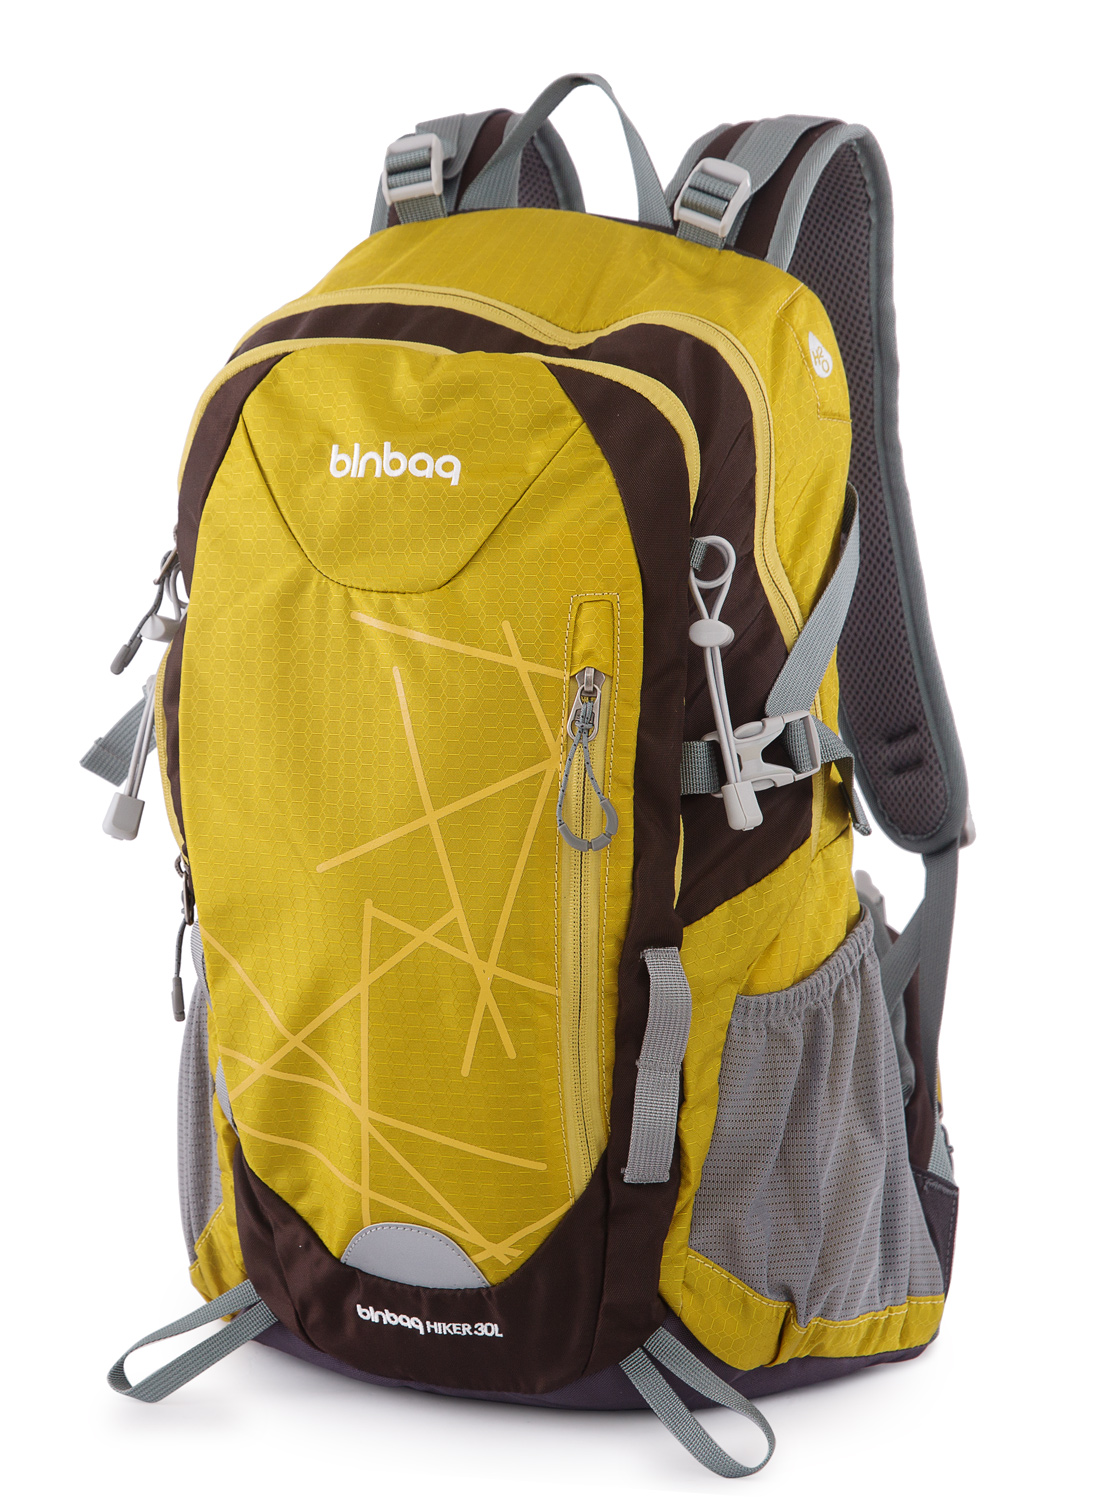 blnbag S1 - Leichter Sportrucksack mit Regenschutz, für Camping und Freizeit, unisex 20L, Inka Gold